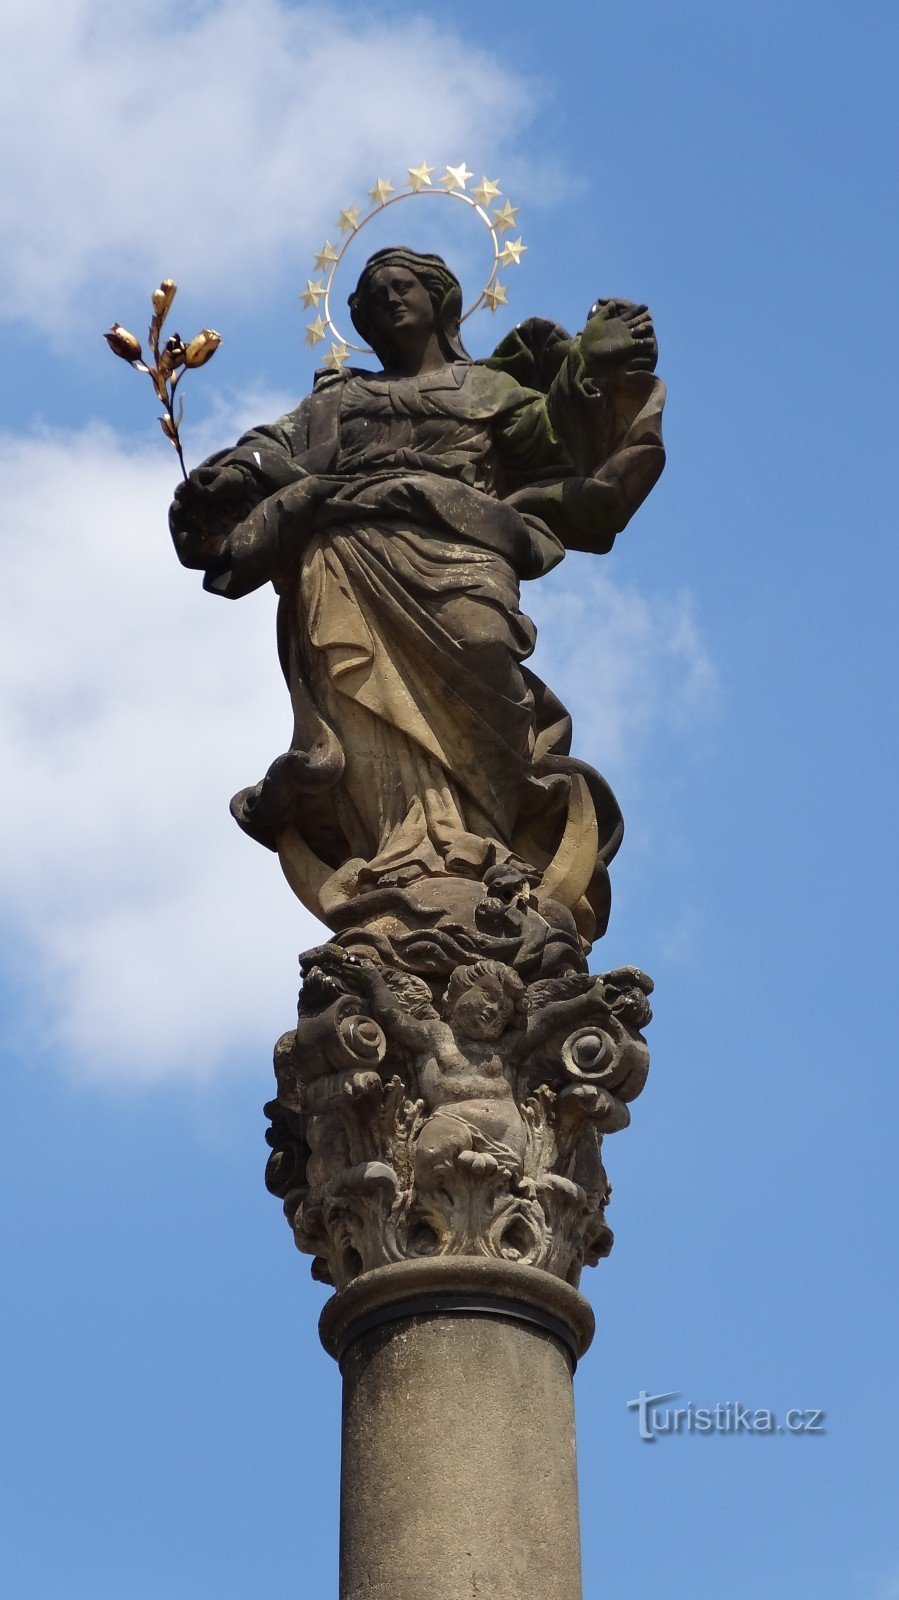 Статуя на вершине колонны